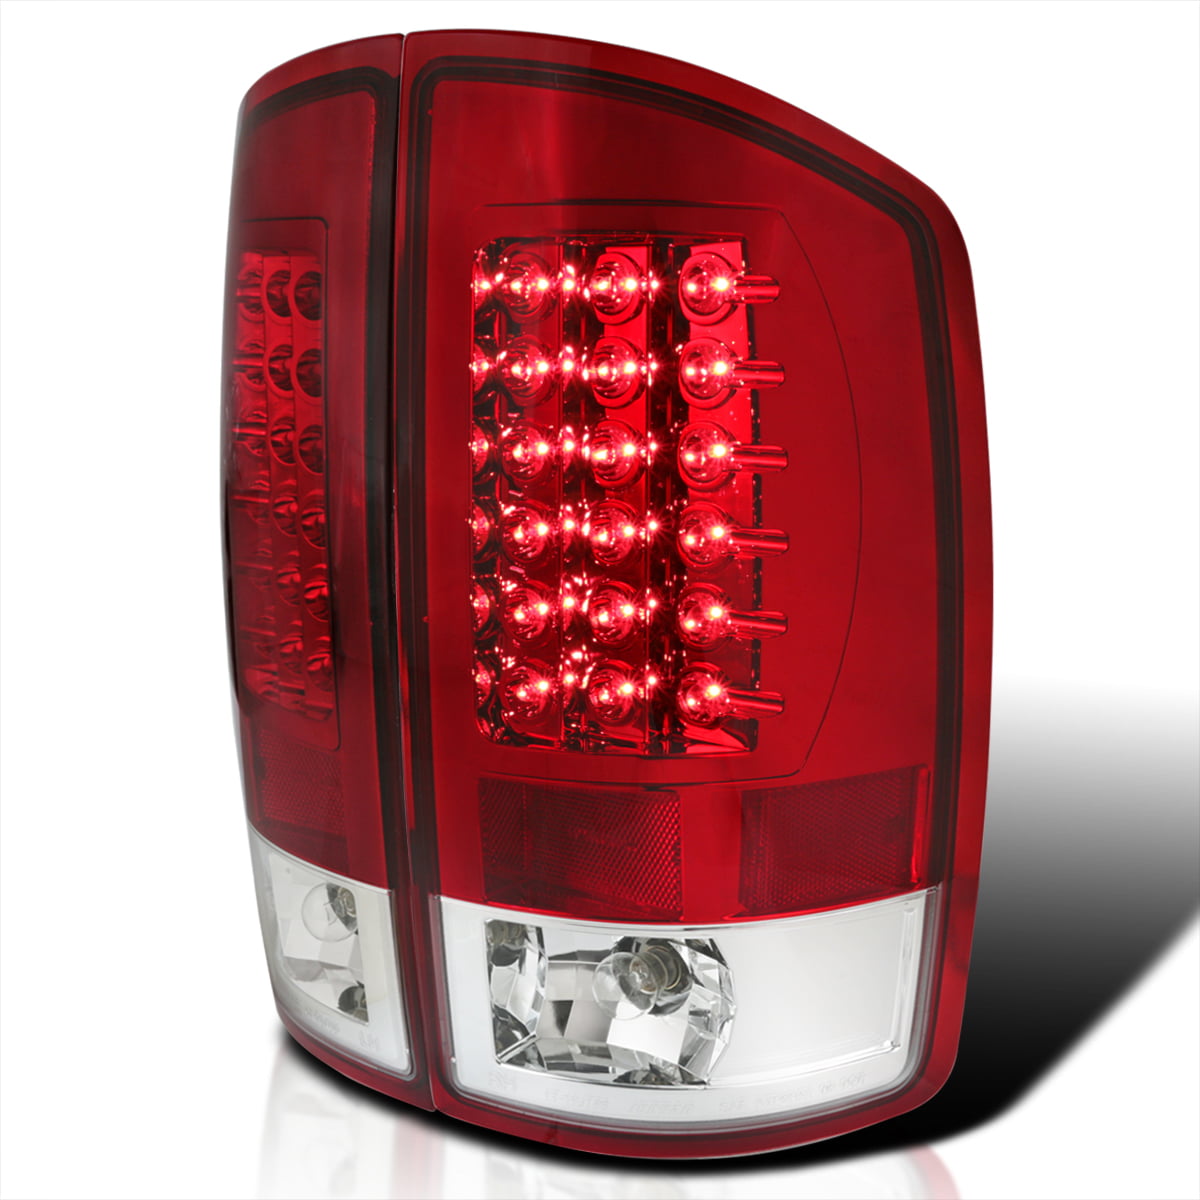 VIPMOTOZ Full-LED Tail Light Lamp For 2009-2018 Dodge RAM 1500 2500 3500 - Driver & Passenger Side Smoke Lens - Metallic Chrome Housing Factory Incandescent Model 